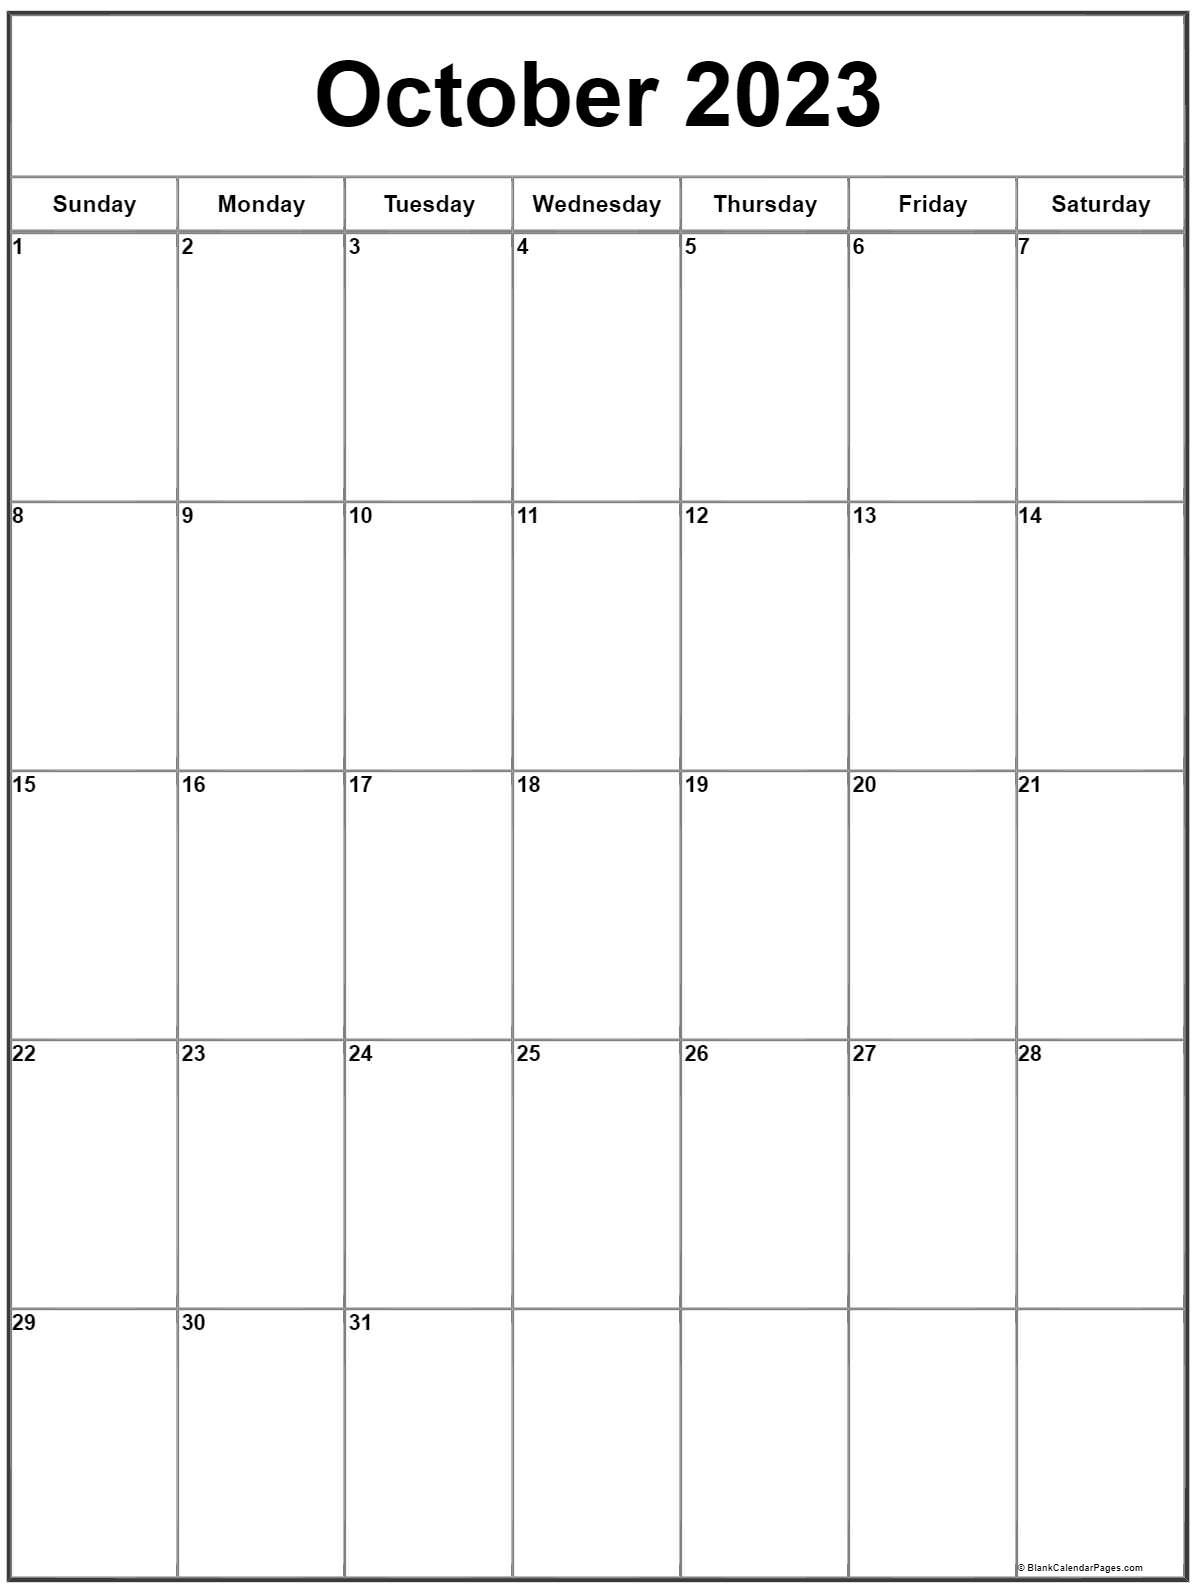 October 2023 Calendar Free Printable Calendar October 2023 Calendar 